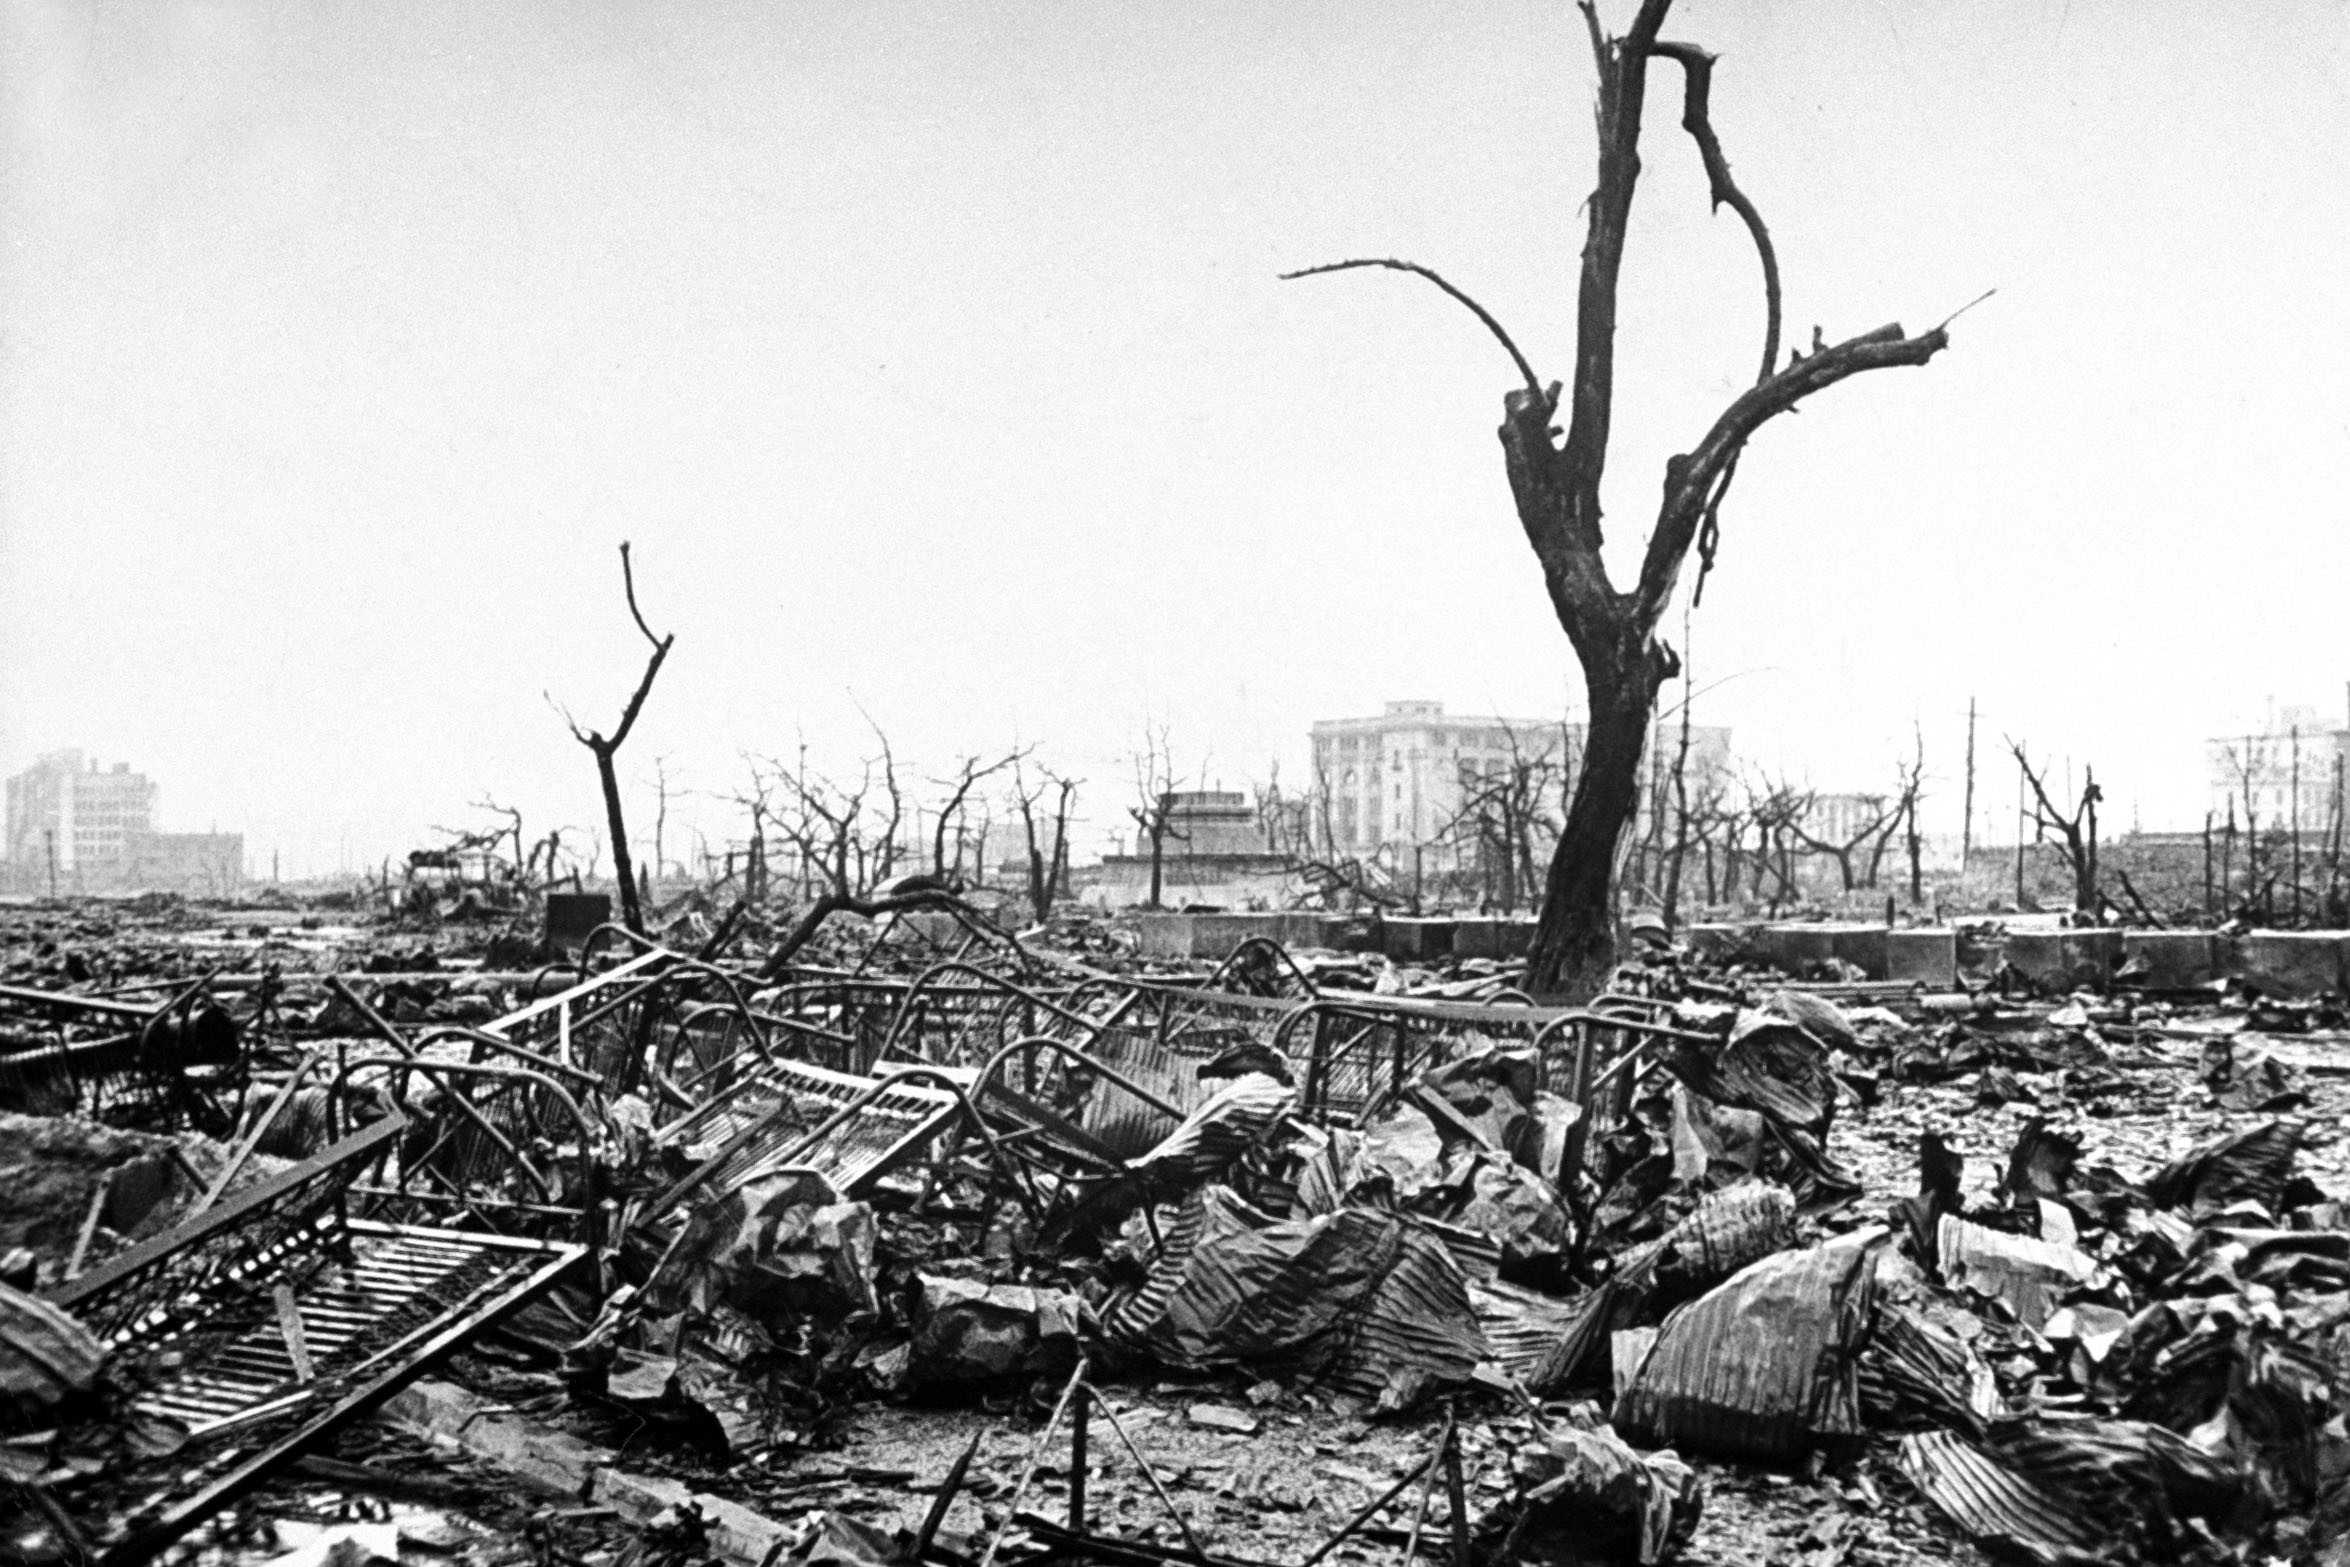 Cenário devastado de Hiroshima após a bomba atômica. (Foto: Bernard Hoffman/The LIFE Picture Collection/Getty Images)